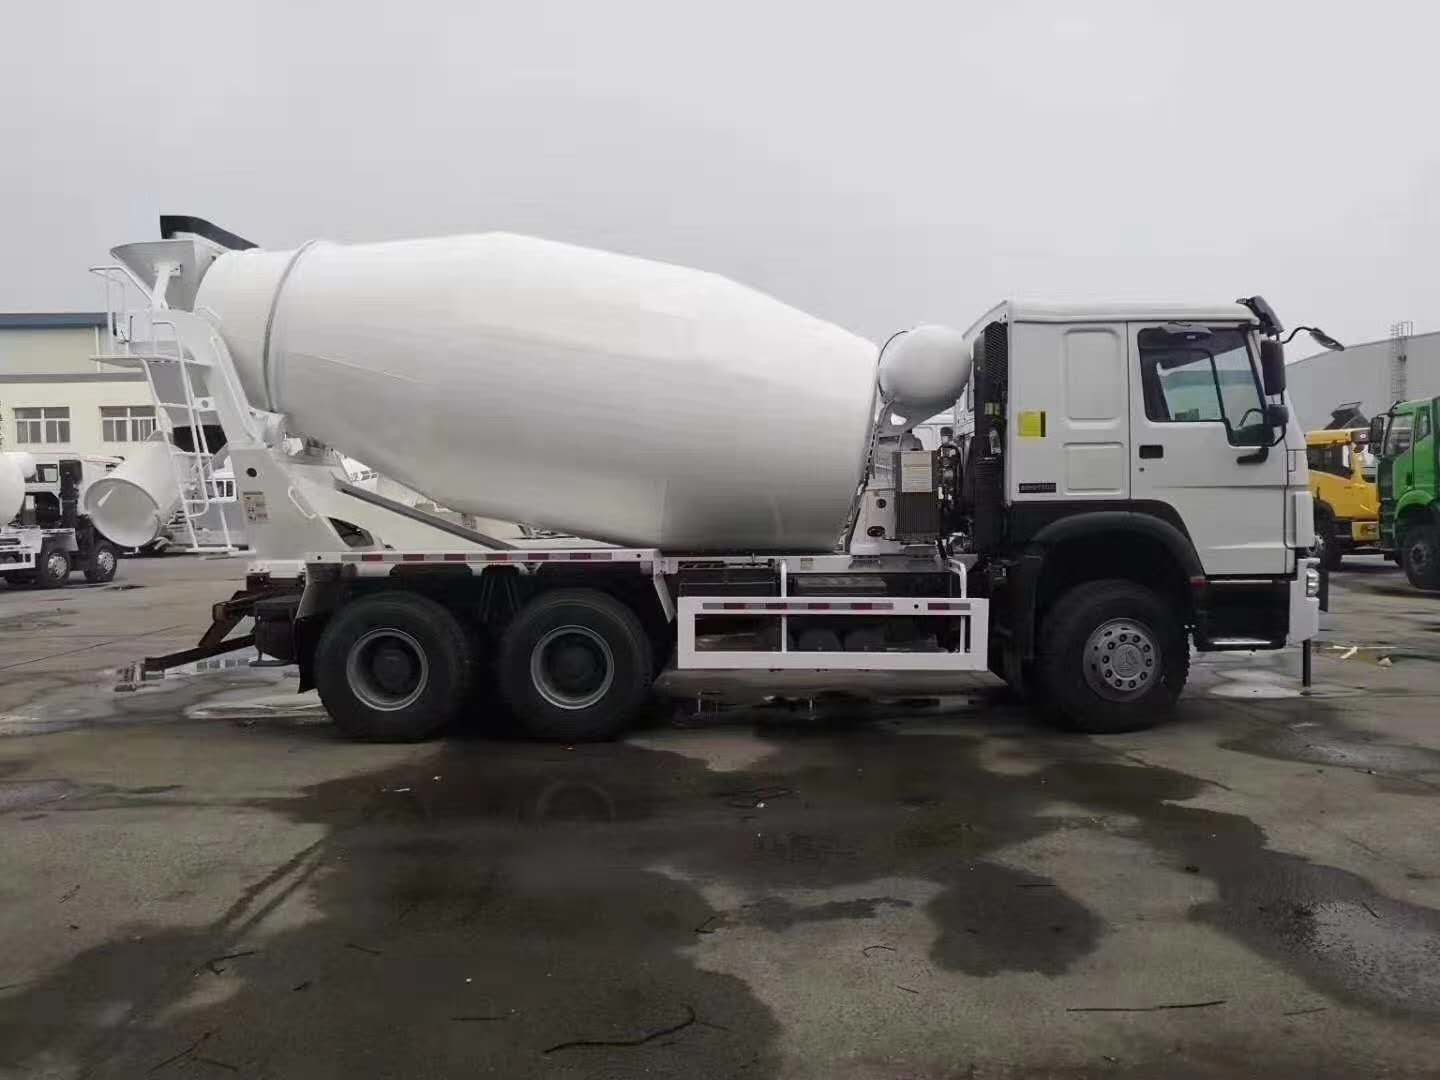 Camion della betoniera m3 di Sinotruk Howo 6X4 9 con la direzione tedesca di ZF